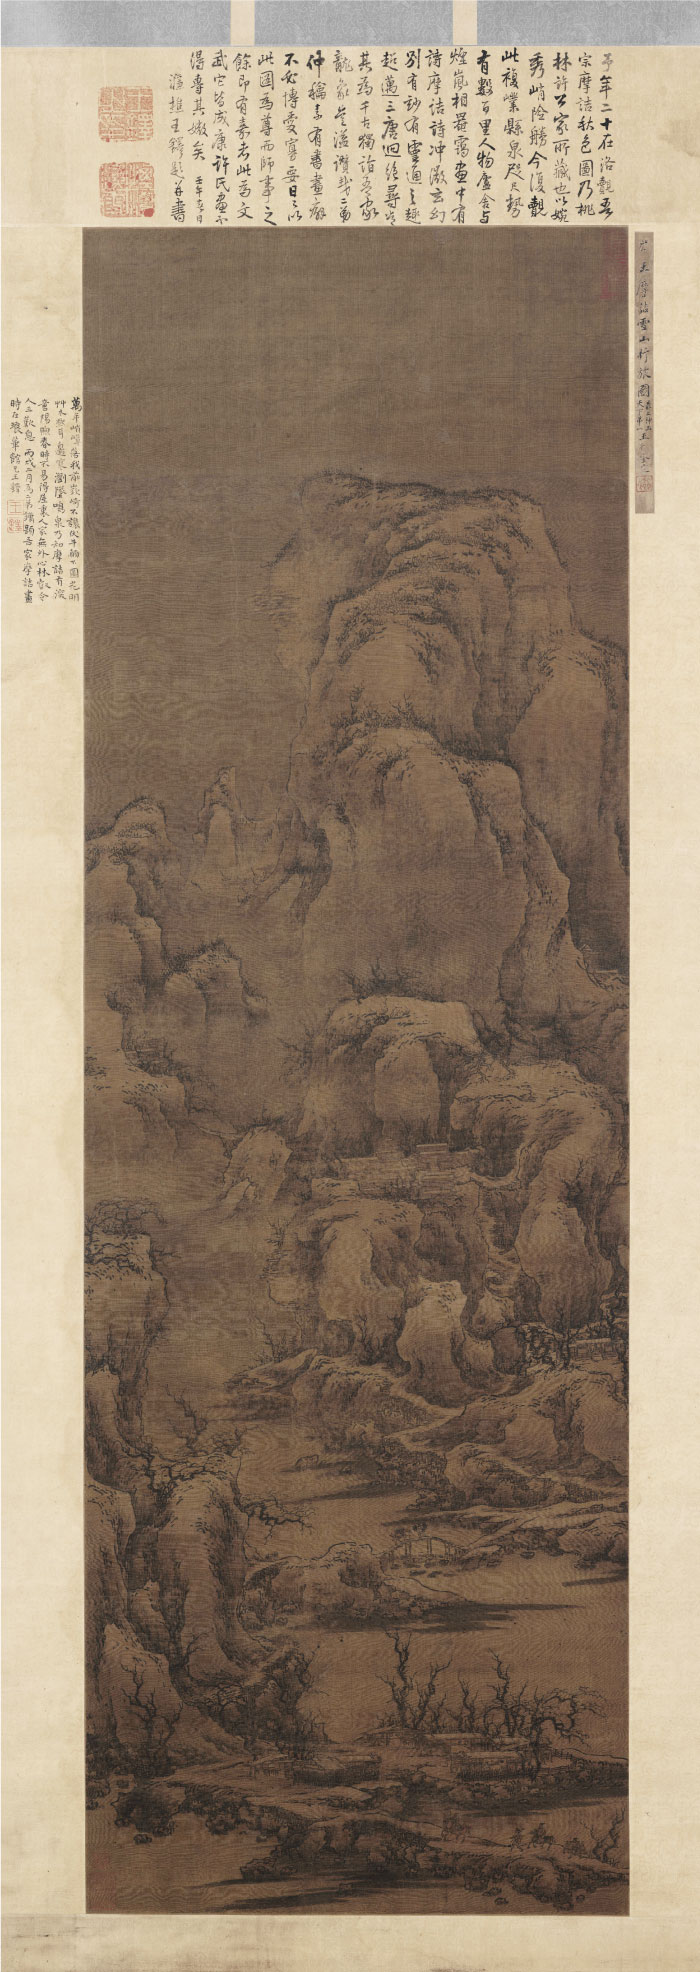 北宋 佚名 《雪山行旅图轴》绢本高清作品 226x80 台北故宫